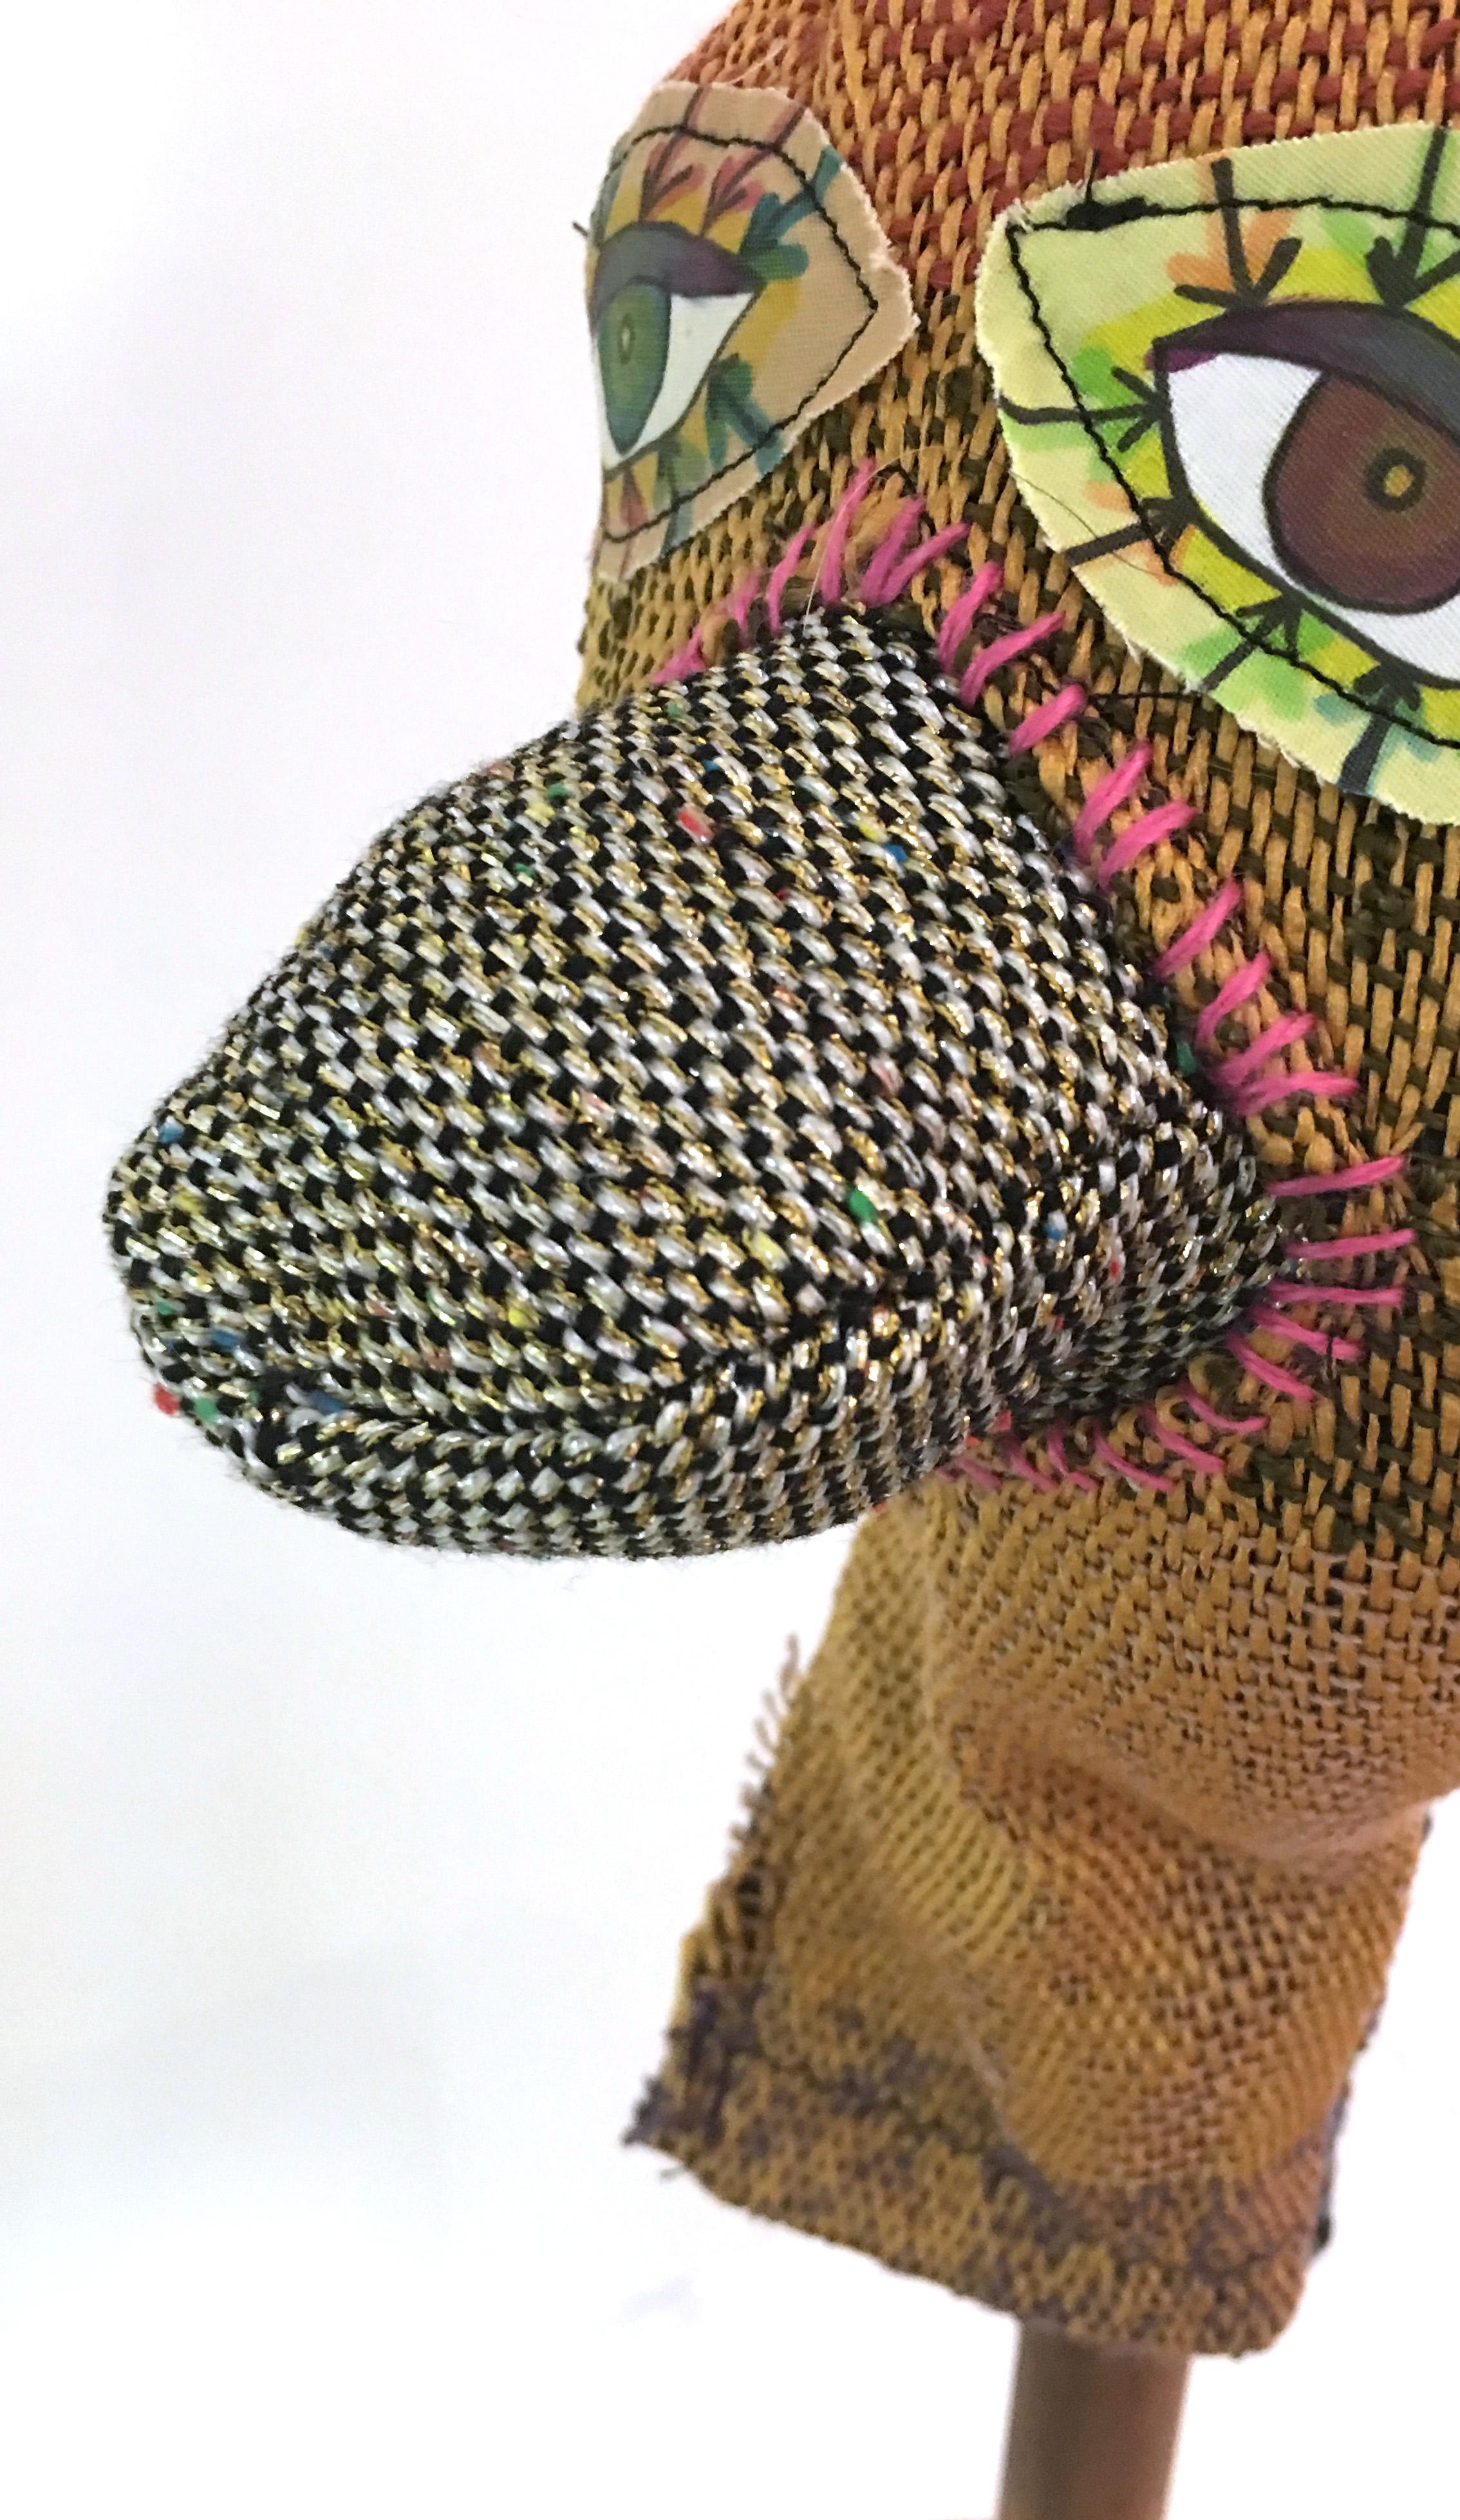 Handwoven Textile Sculpture: 'I am Puppet' (beak) - Mixed Media Art by Juliet Martin